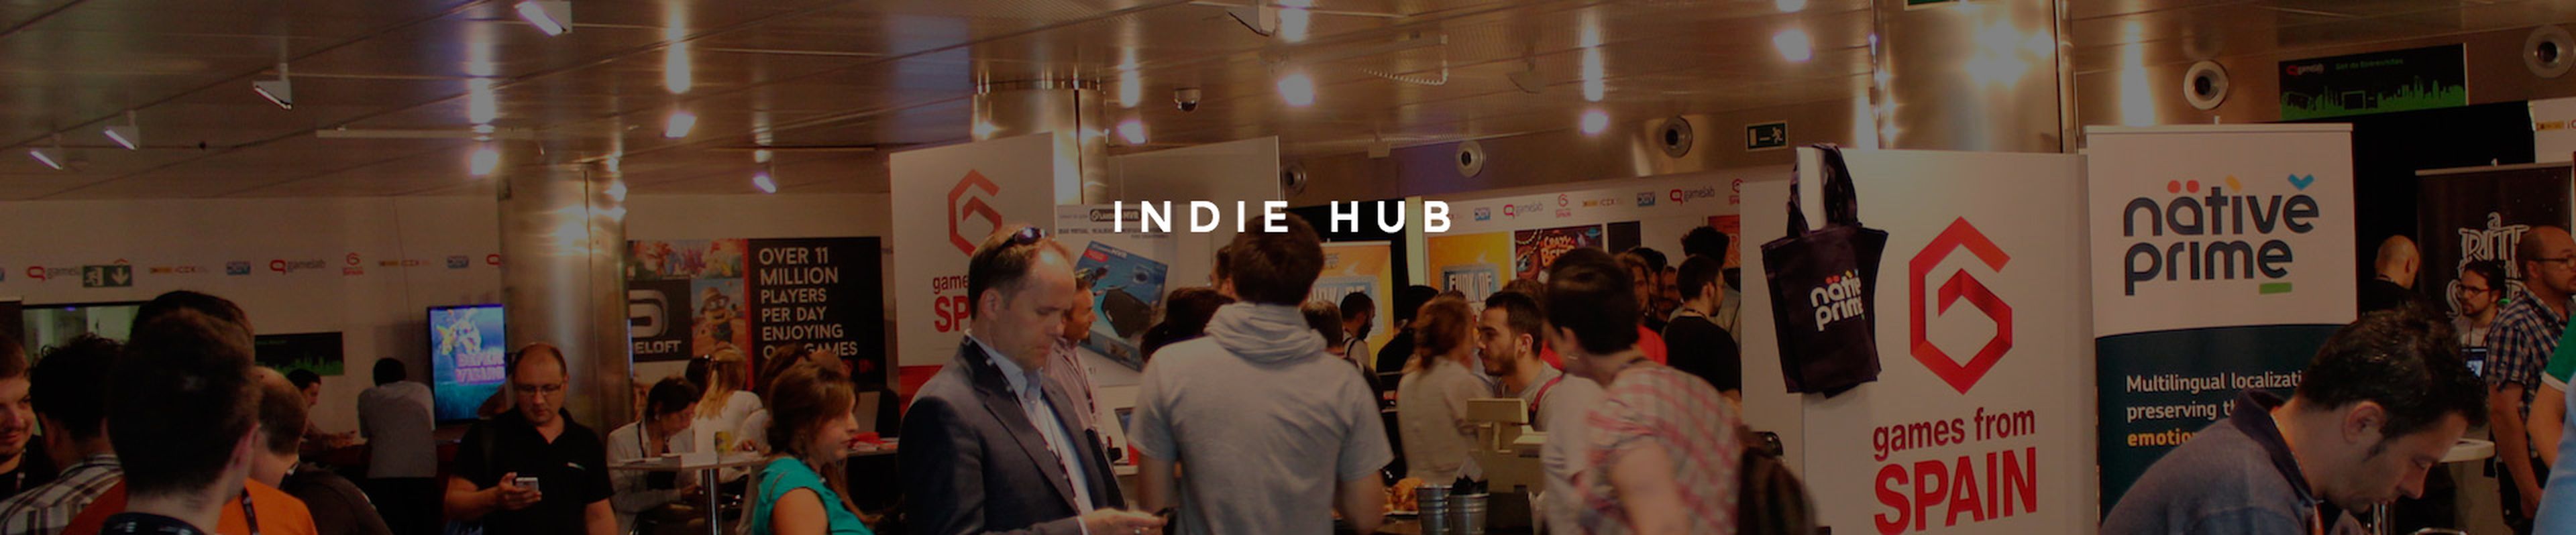 Indie Hub Gamelab 2016